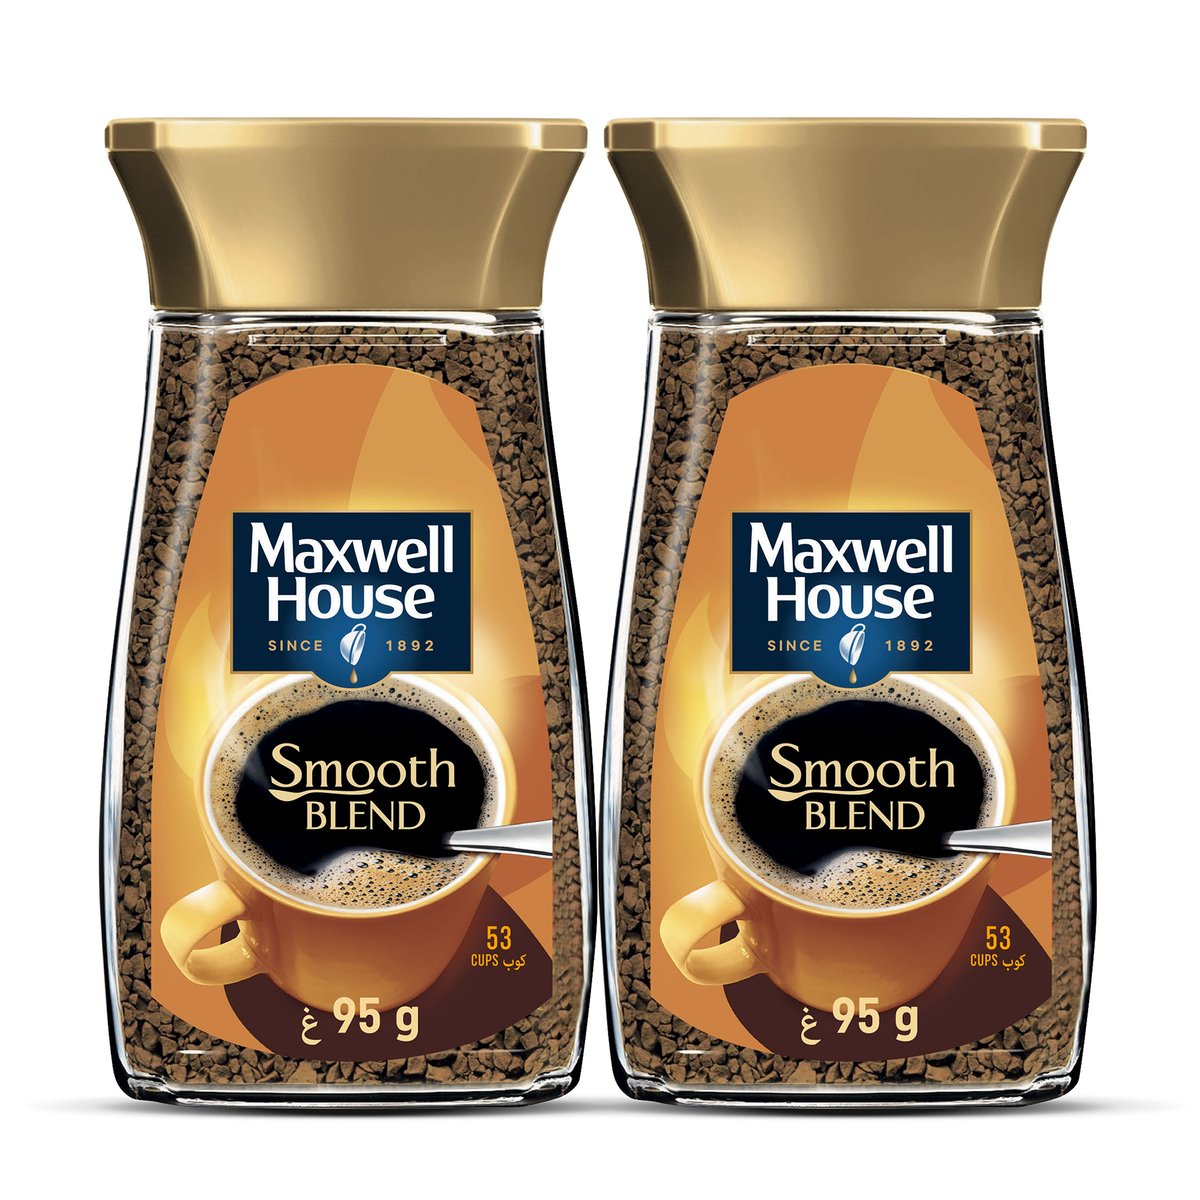 Buy Maxwell House Soluble Coffee Smooth Blend 2 x 95 g Online at Best Price | Coffee | Lulu UAE in UAE